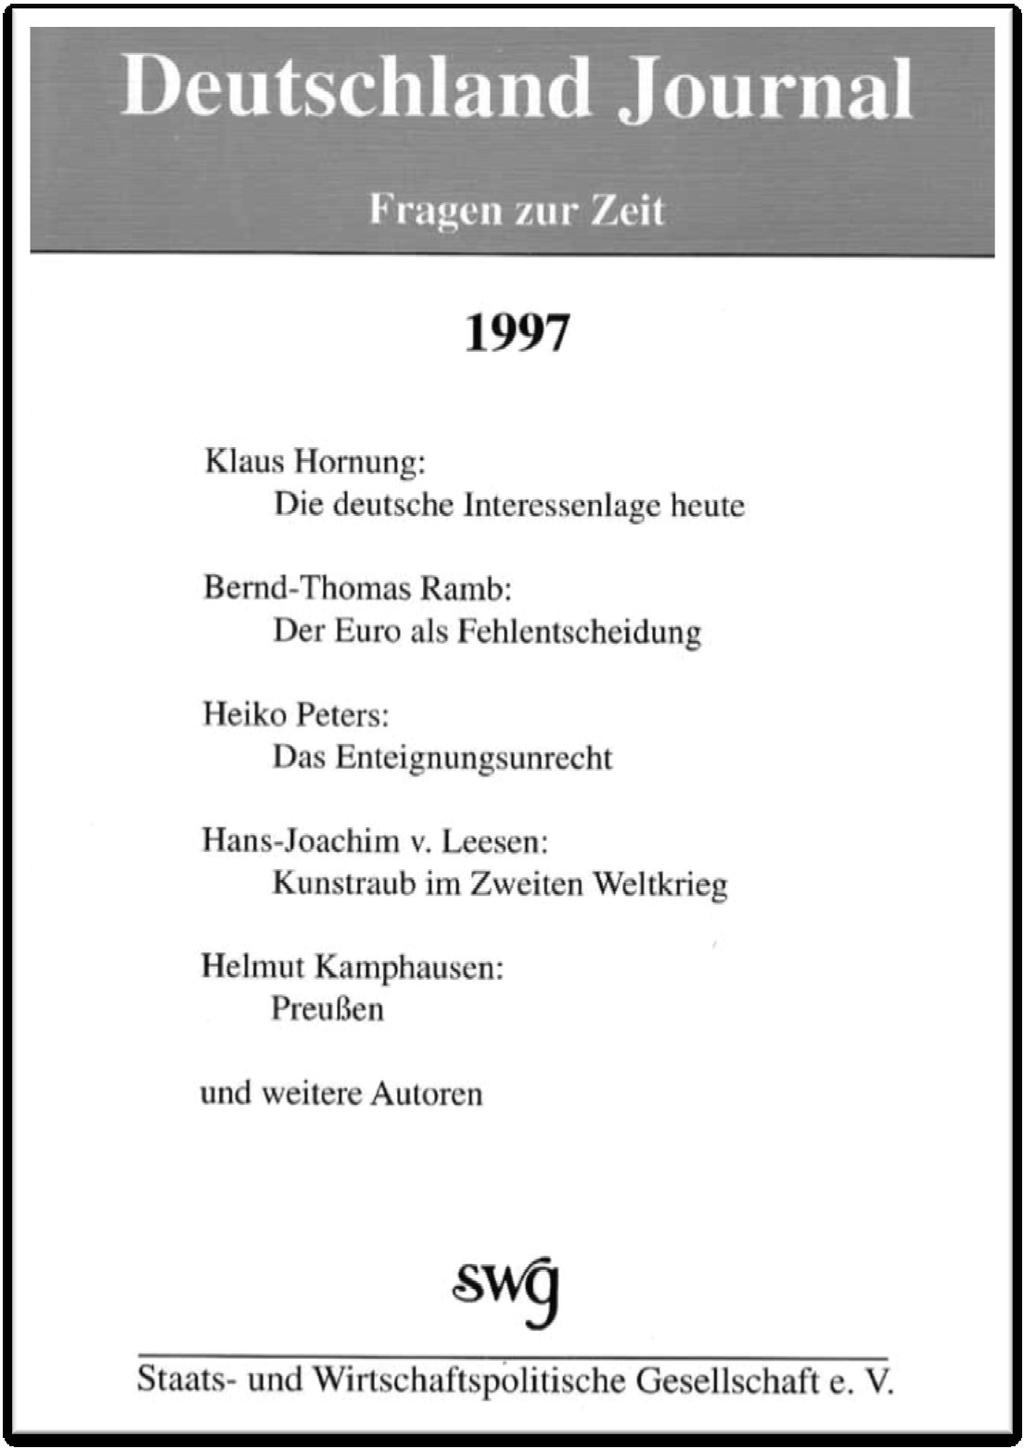 1991 führte die SWG die Namen der ehemaligen Monatsschrift Deutschland-Journal und Fragen zur Zeit (als